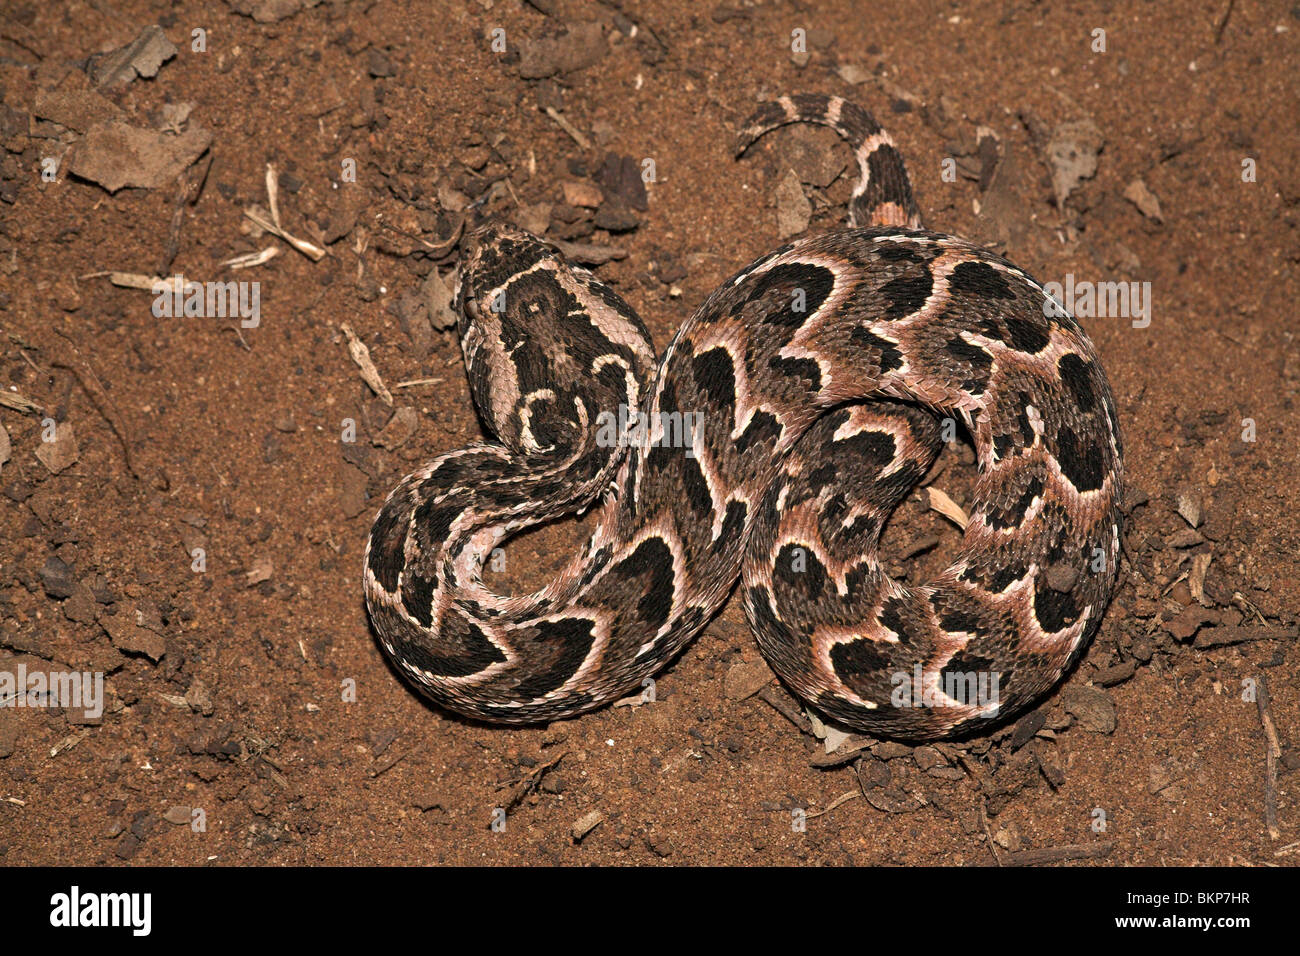 Photo d'un additionneur, hautement venimeux, puff puff adder le est responsable de la plus mortelle de serpents en Afrique chaque année (en partie grâce à son vaste réseau de distribution !) ; Banque D'Images